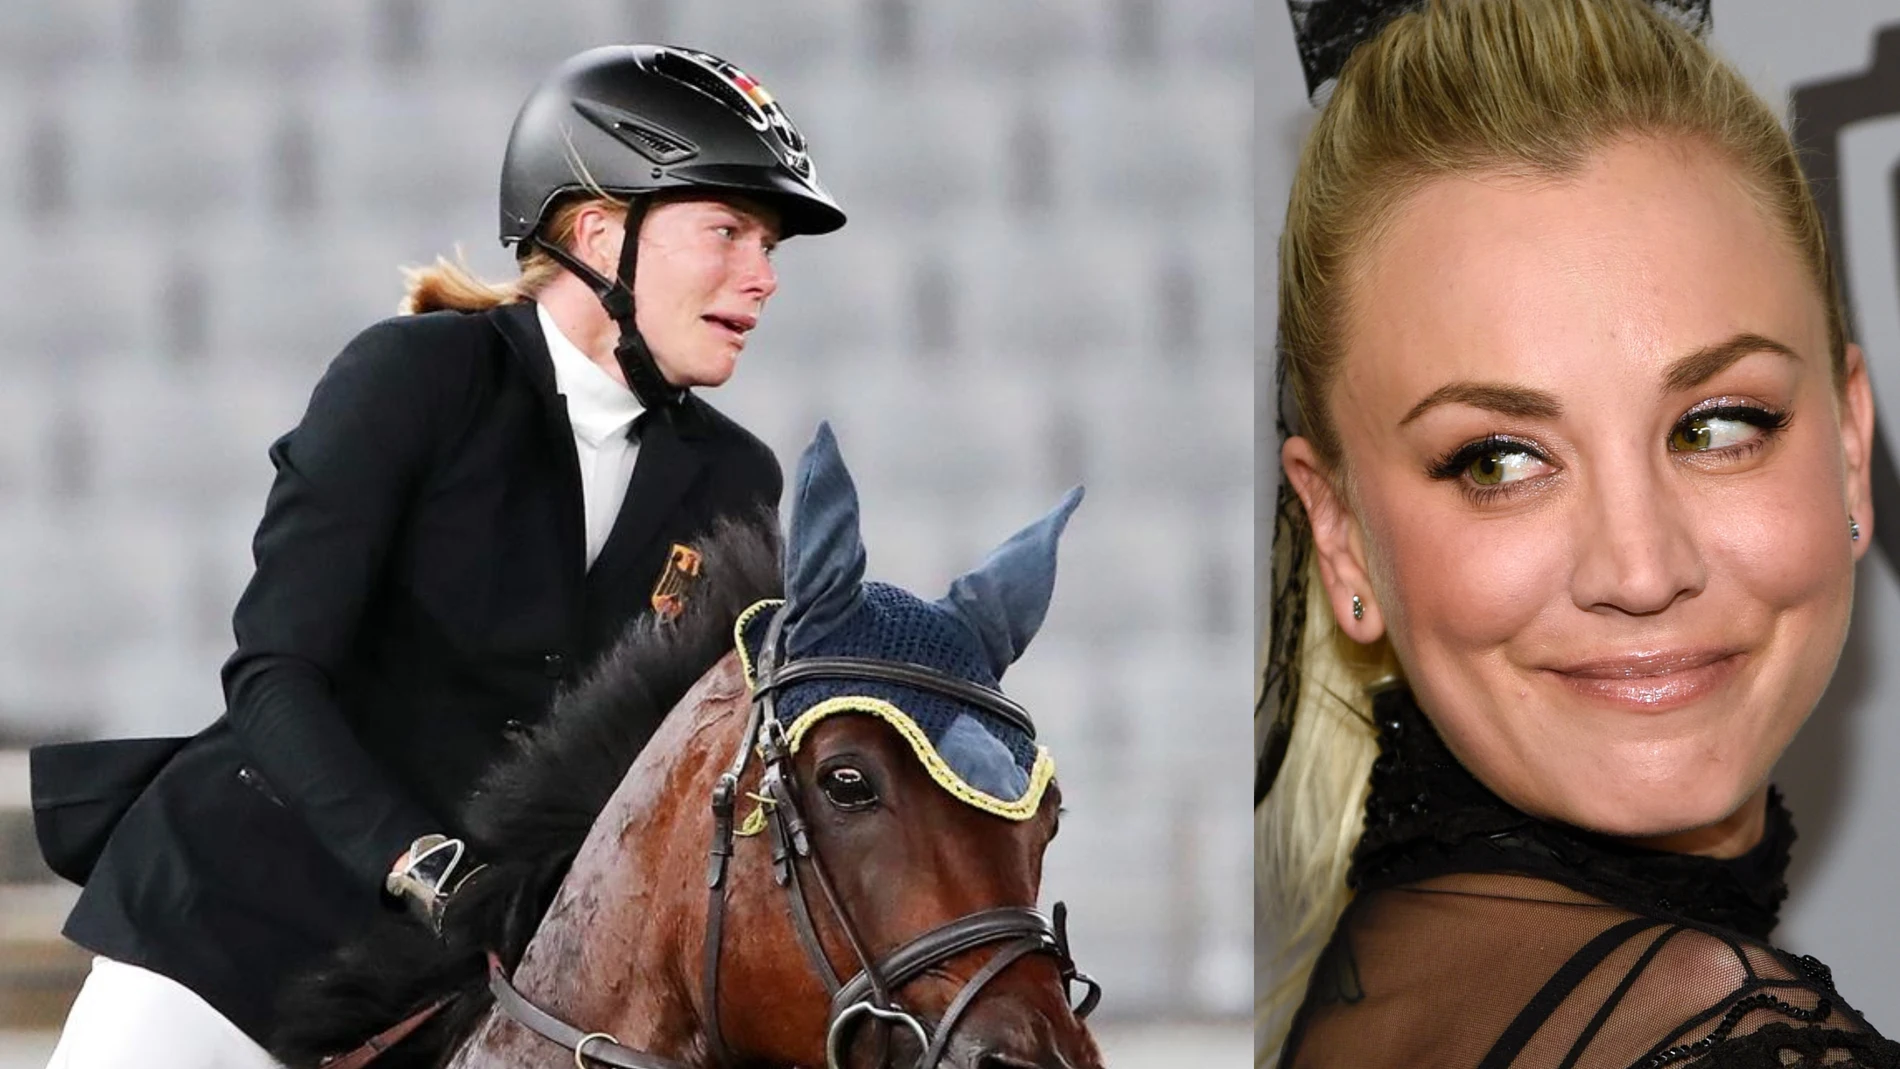 La actriz Kaley Cuoco quiere comprar a Saint Boy, el caballo maltratado en los Juegos Olímpicos 